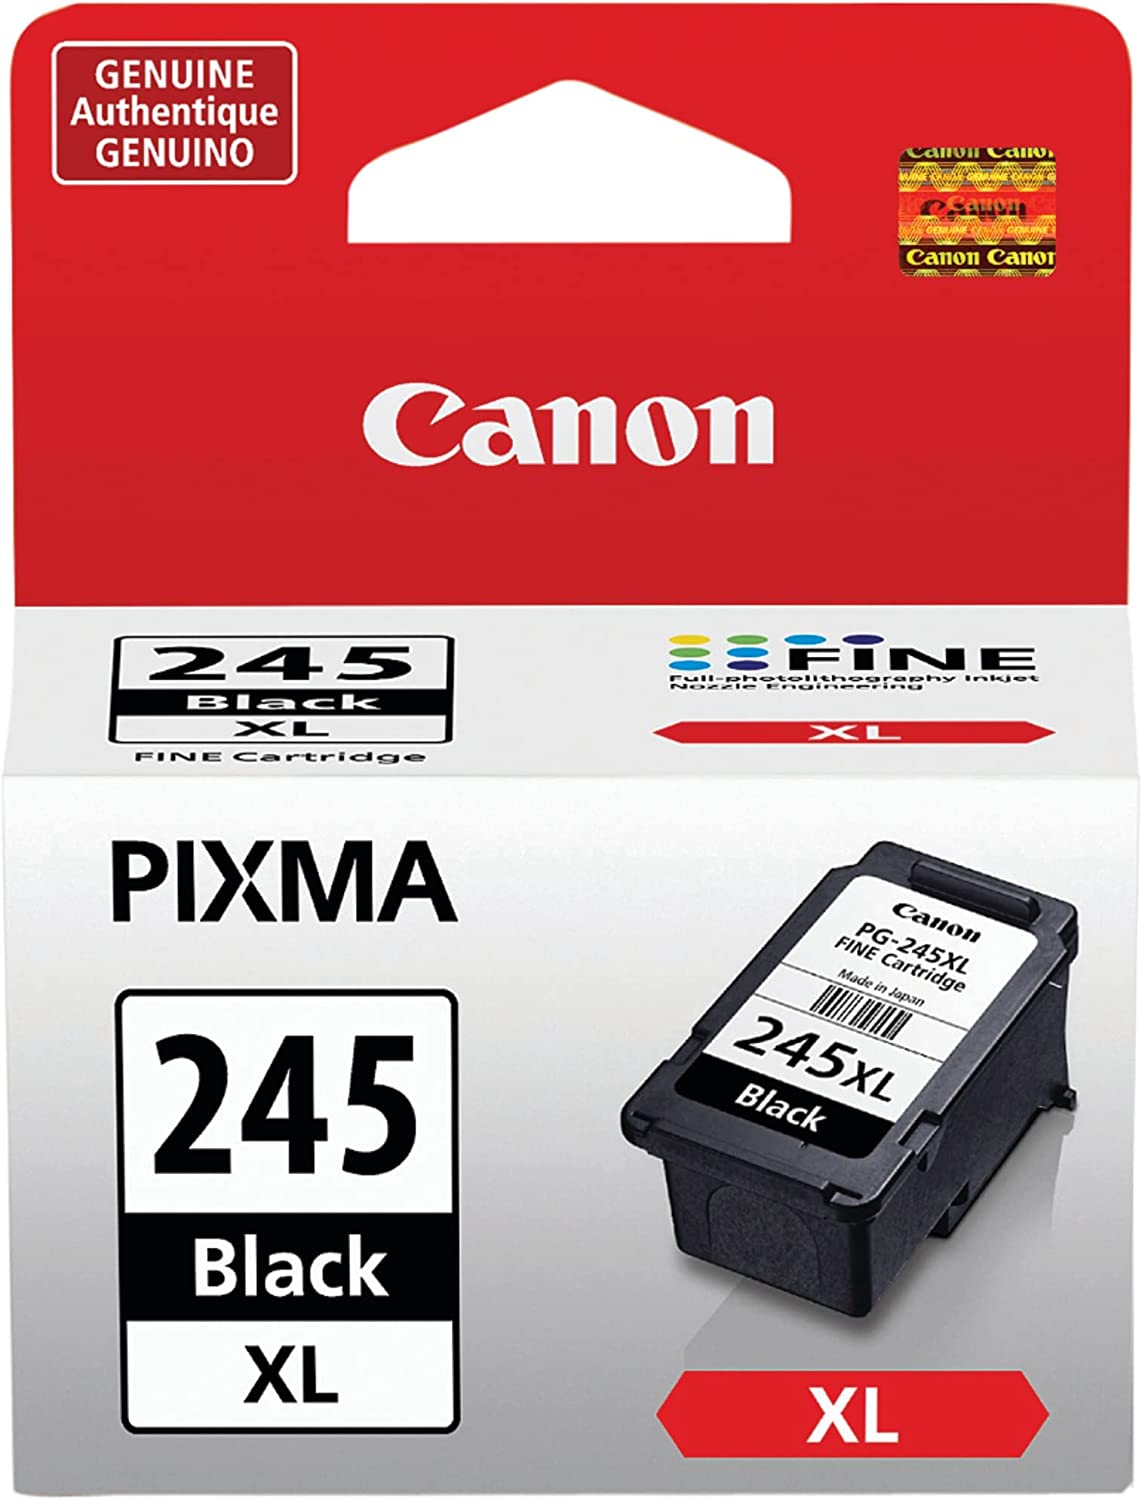 iP2820, MG2420, MG2924, MG2920, MX492, MG3020, MG2525, TS3120, TS302, TS202, TR4520과 호환되는 캐논 PG-245 XL 블랙 프린터 잉크 카트리지